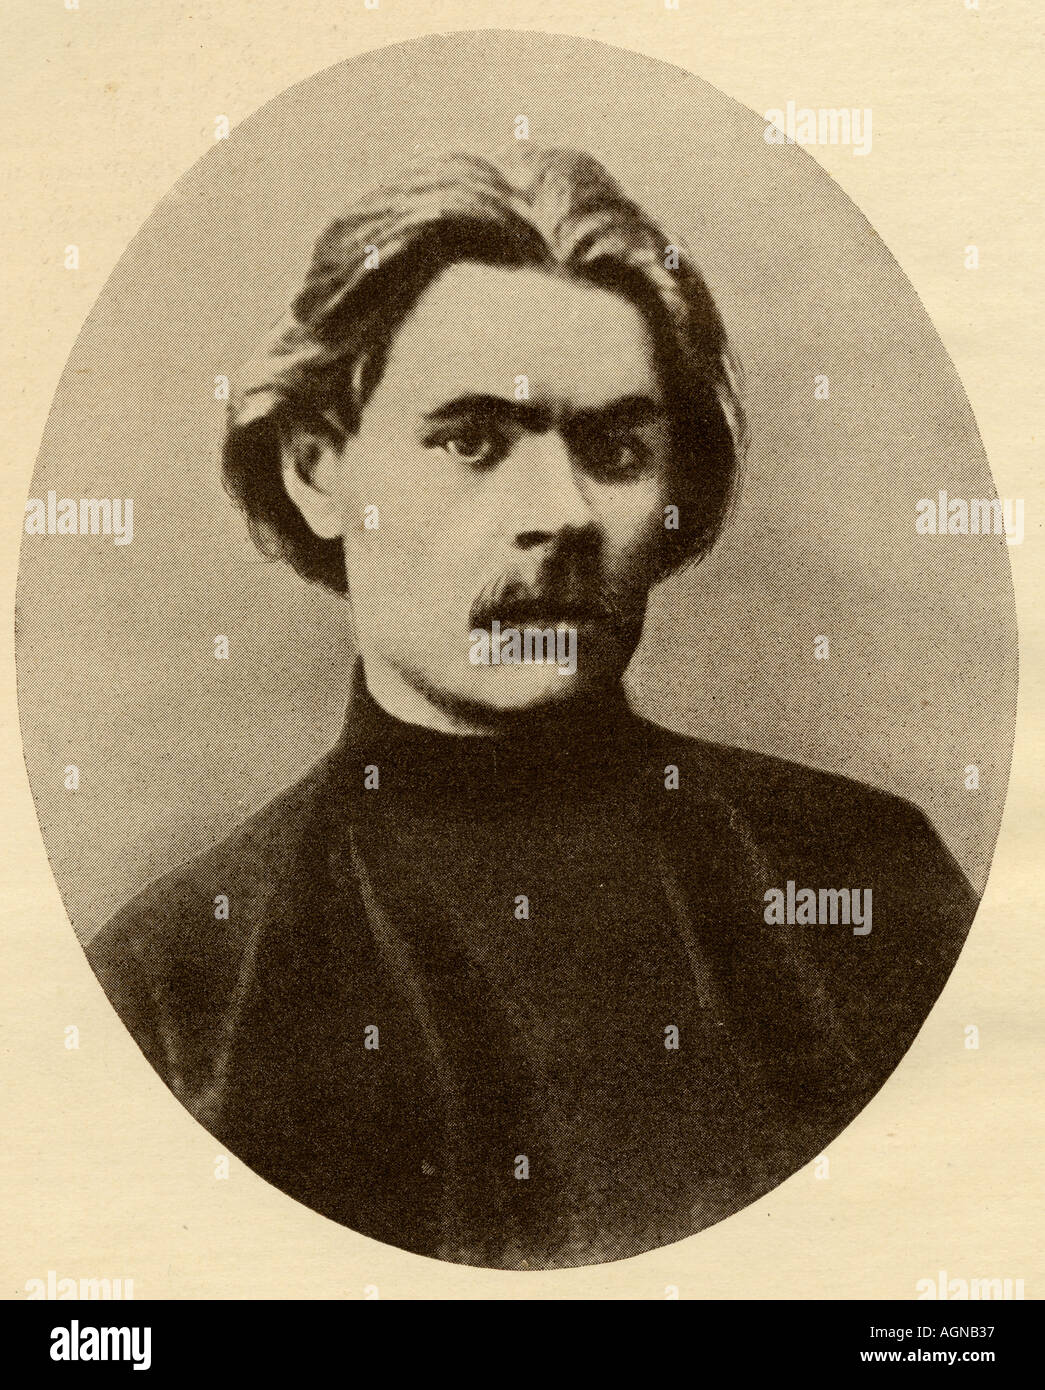 Alexei Maximovich Peshkov, aka Maxim Gorky, 1868 -1936. Il romanziere sovietica, drammaturgo e attivista sociale. Foto Stock